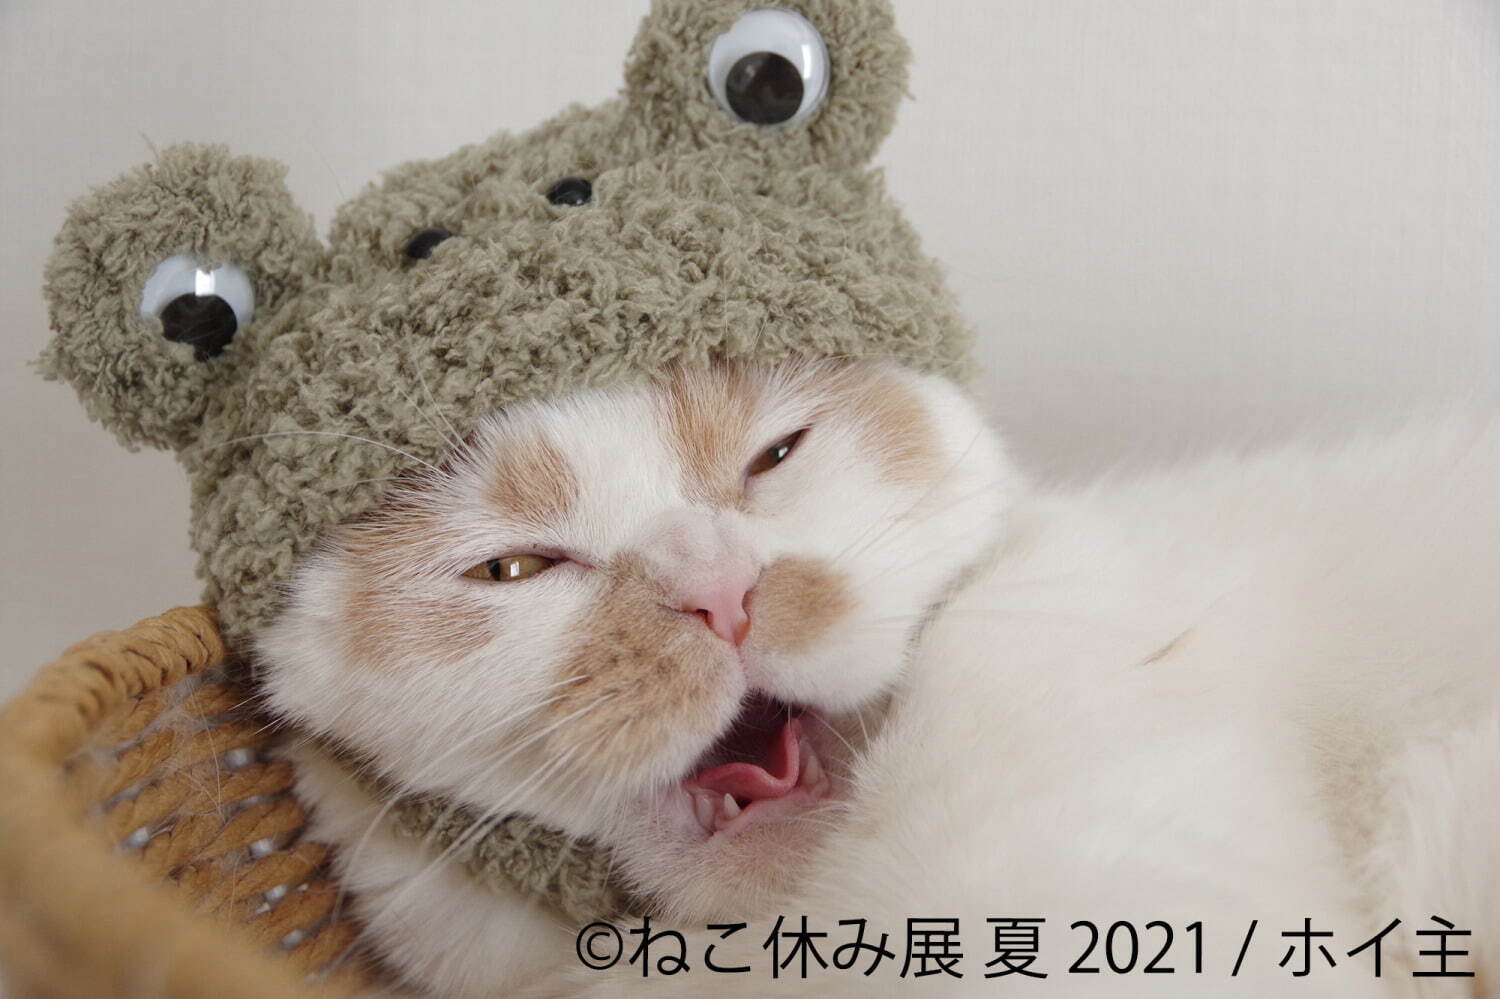 過去最大規模 癒し猫の写真展 ねこ休み展 夏 21 東京 浅草で スター猫の新作 限定グッズ ファッションプレス